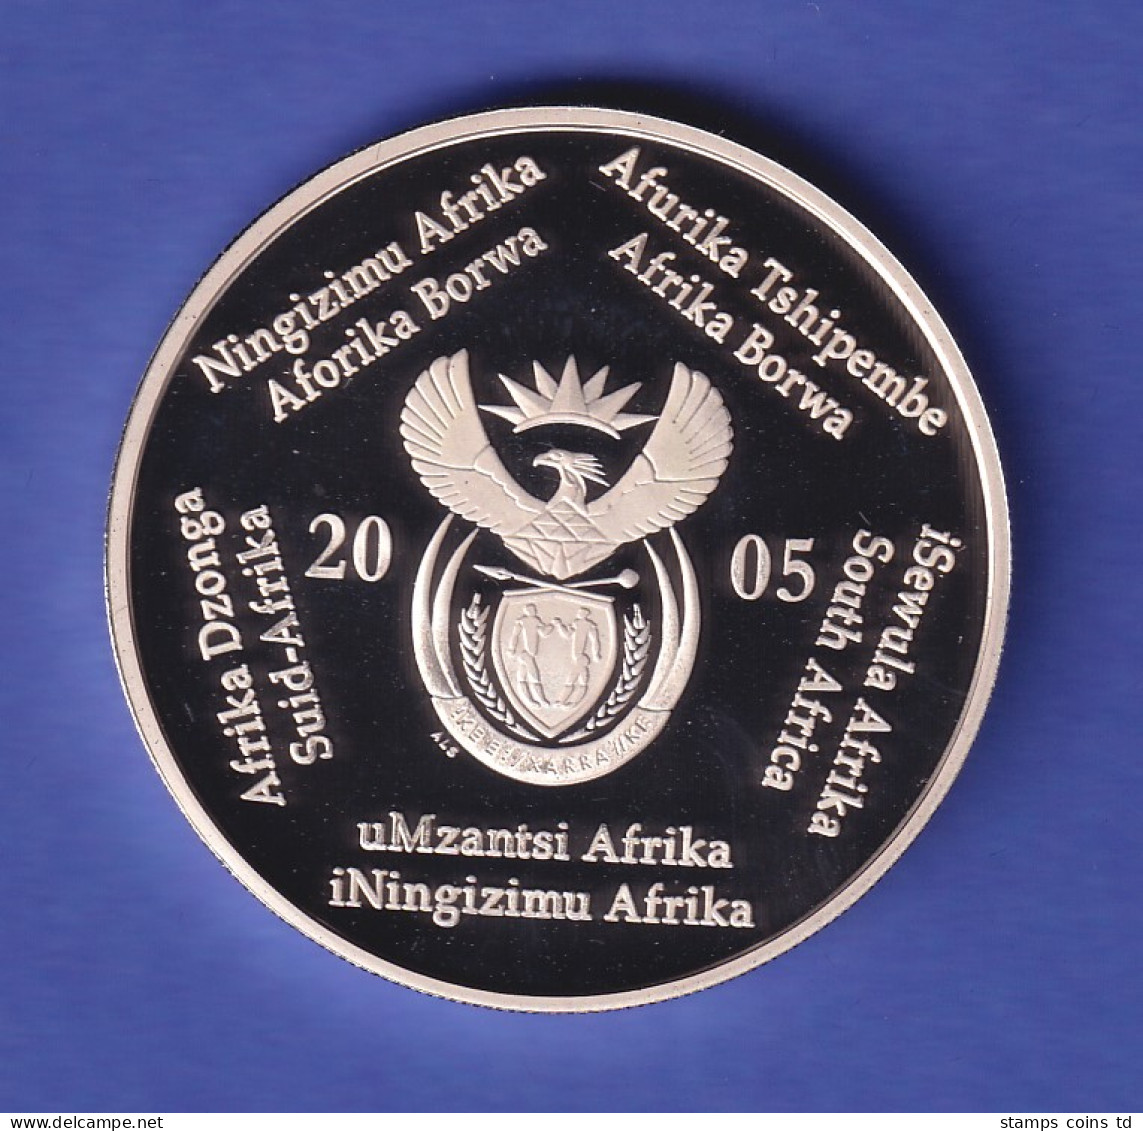 Südafrika 2005 Silbermünze 2 Rand Fußball-Weltmeisterschaft 2006 PP - Other - Africa